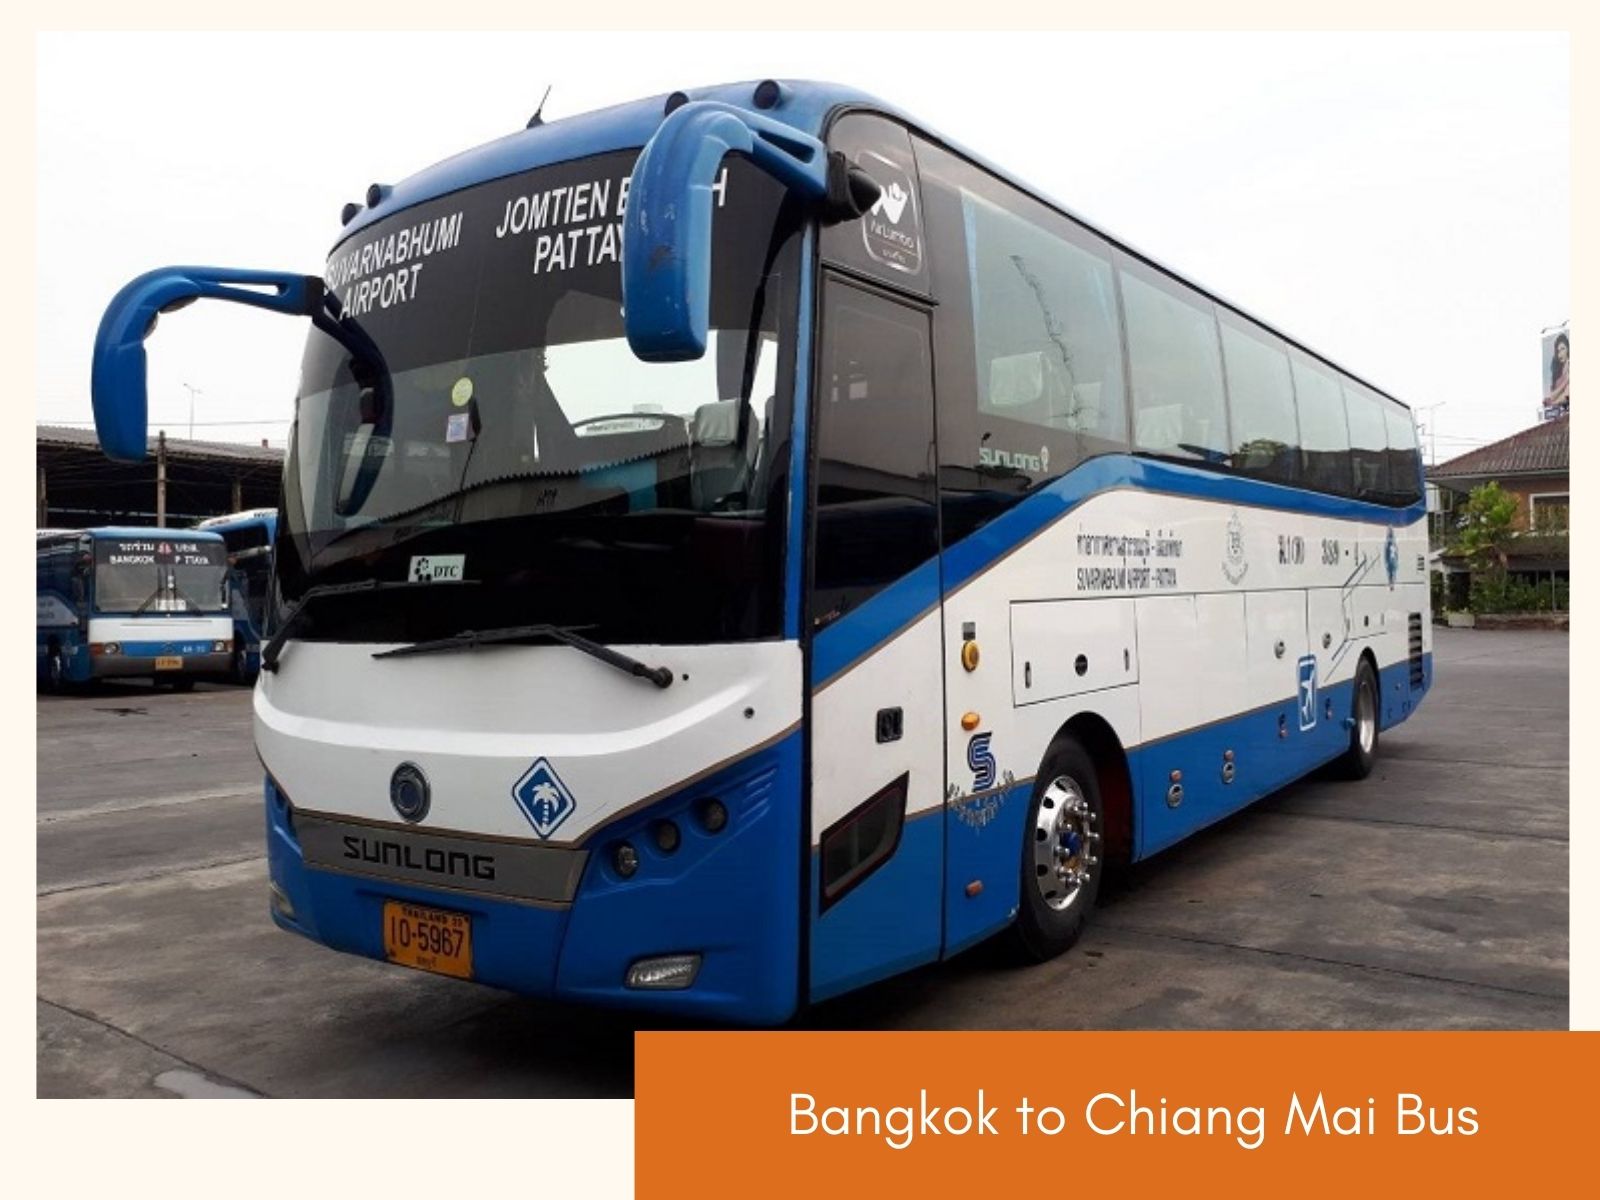 Bangkok to Chiang Mai bus